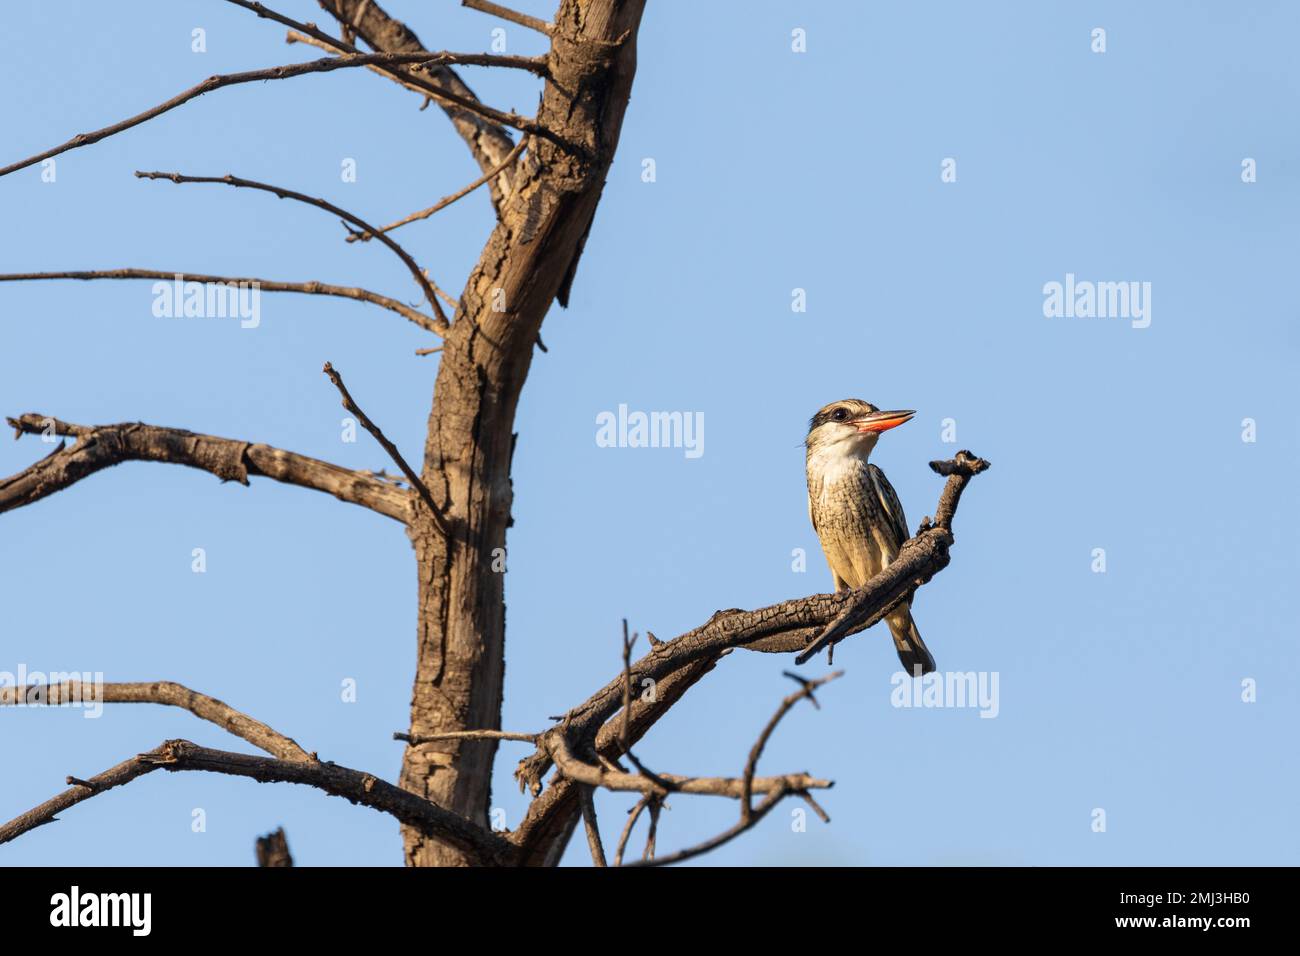 kingfisher rayé (Halcyon chelicuti), perché sur la branche, Gambie, Afrique Banque D'Images